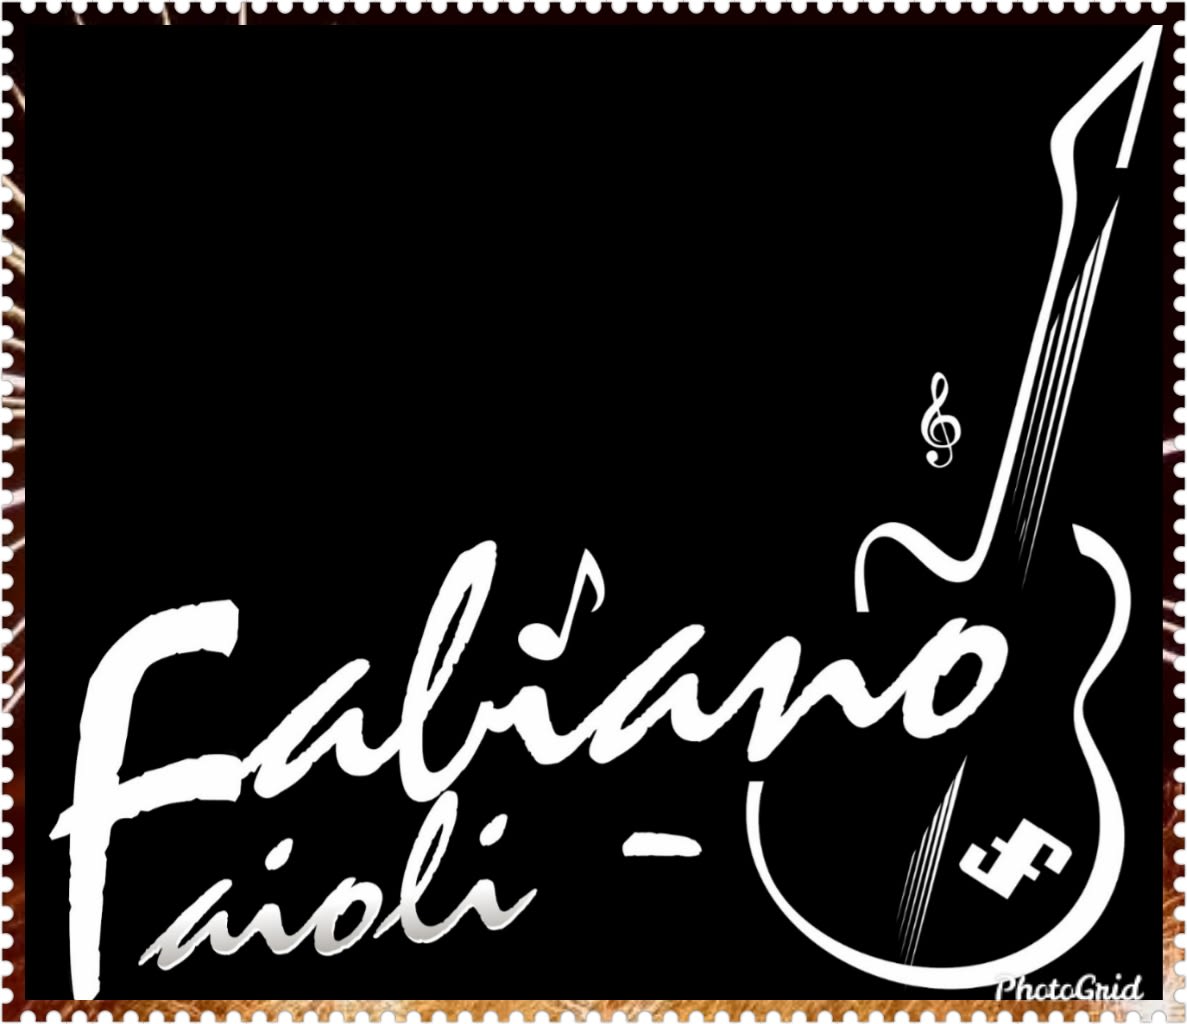 Fabiano Faioli